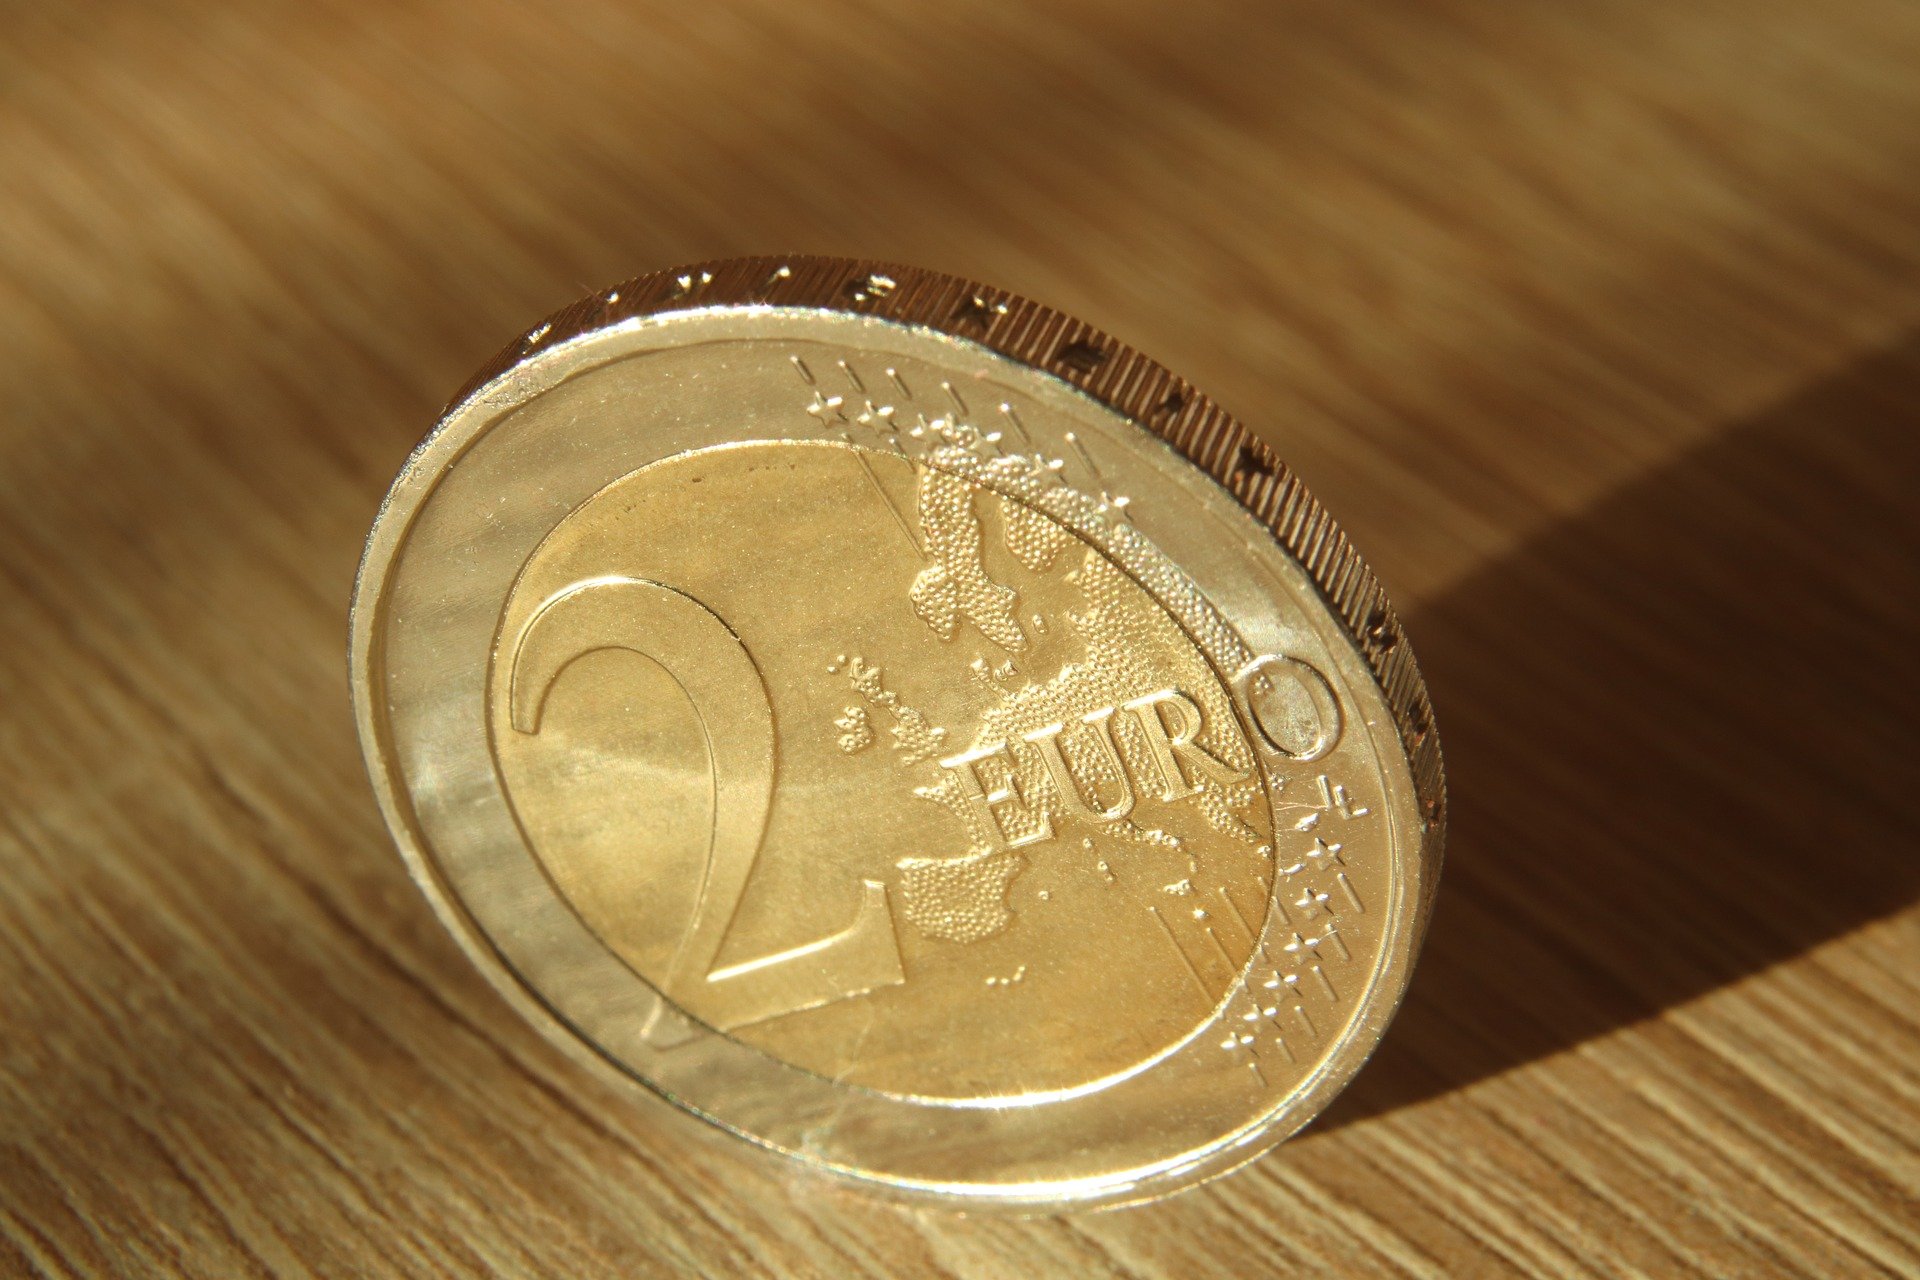 Monedas de dos euros: algunas no valen ni 5 céntimos y otros valen una fortuna